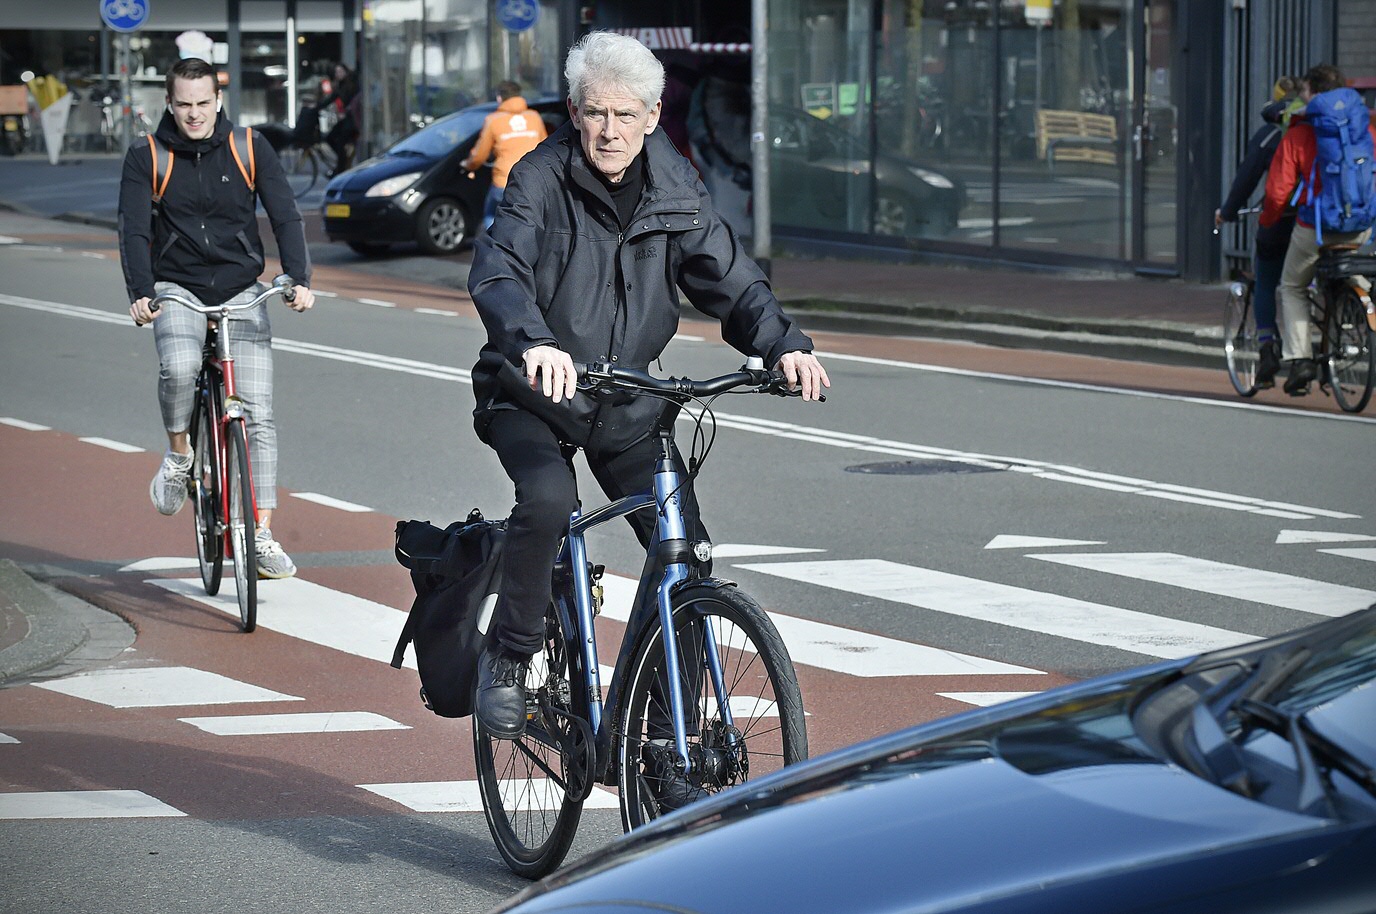 ‘Opschieten in het fietsverkeer is lastig. Dat wringt. Iedereen wil snel en marchandeert steeds gemakkelijker met de veiligheidsmarges.’